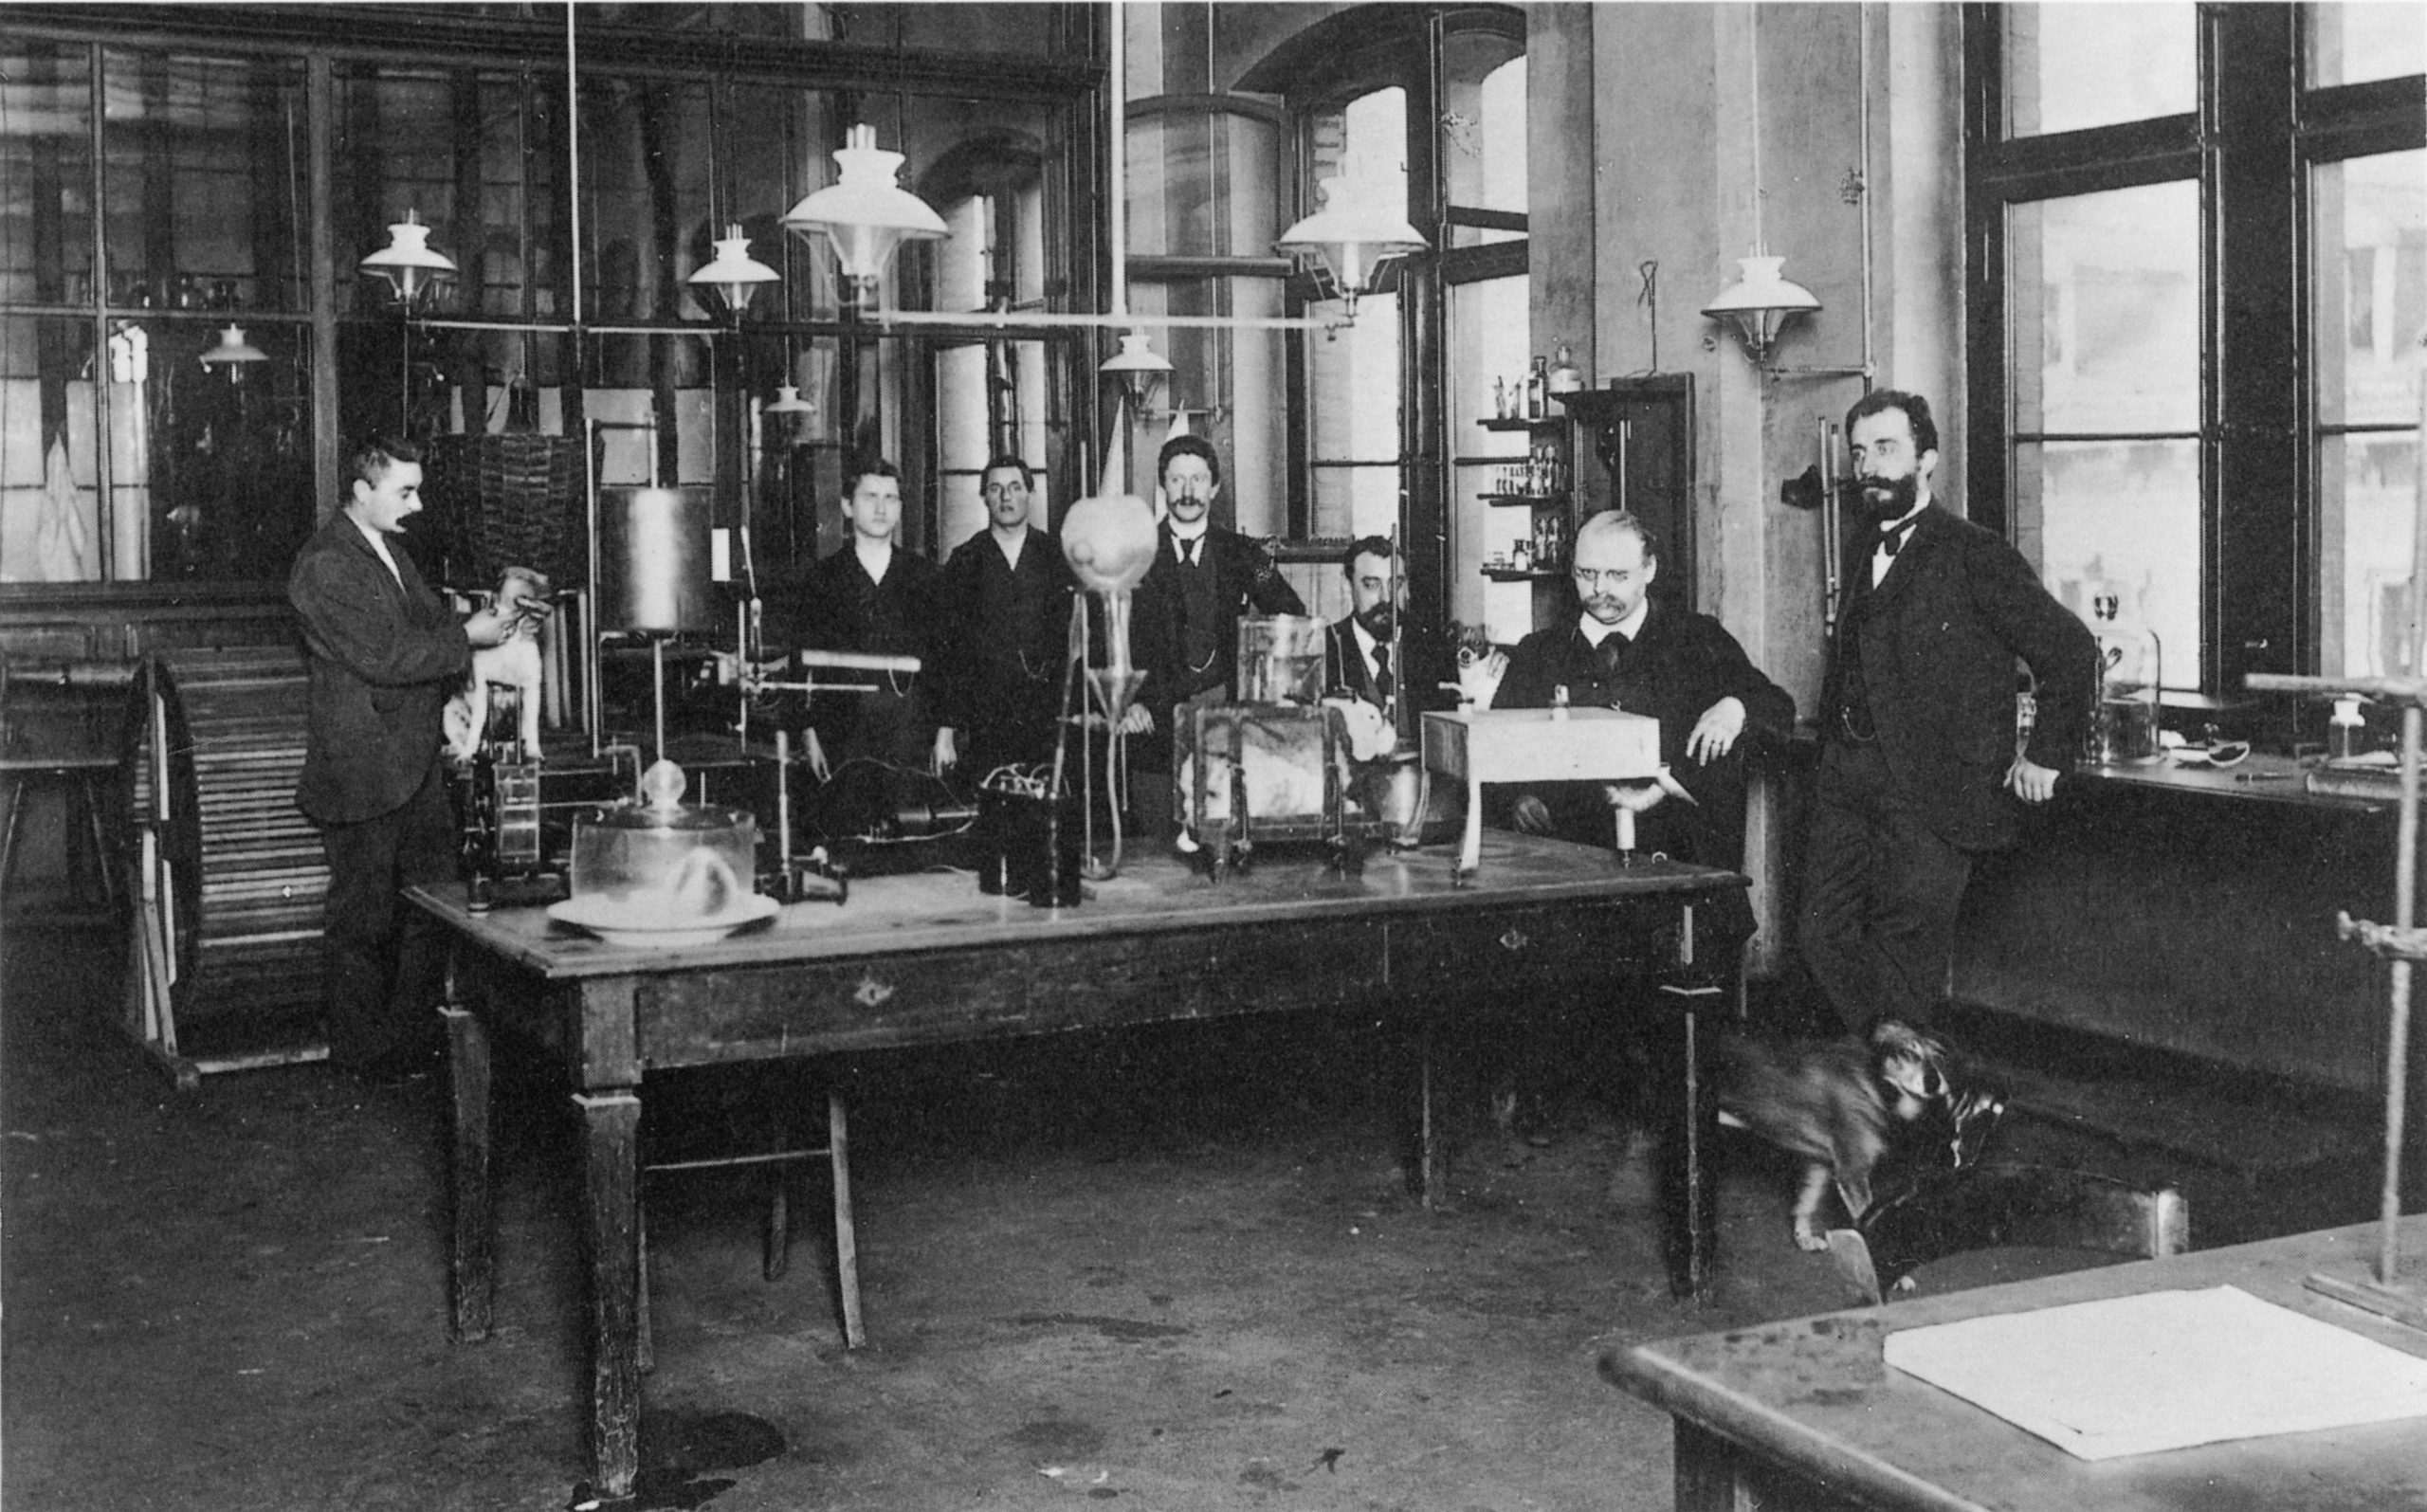 Foto em preto e branco do interior do laboratório da Bayer. Sobre a mesa central, há vários objetos de uso laboratorial, e ao redor dela, sete homens vestidos de terno e gratava.